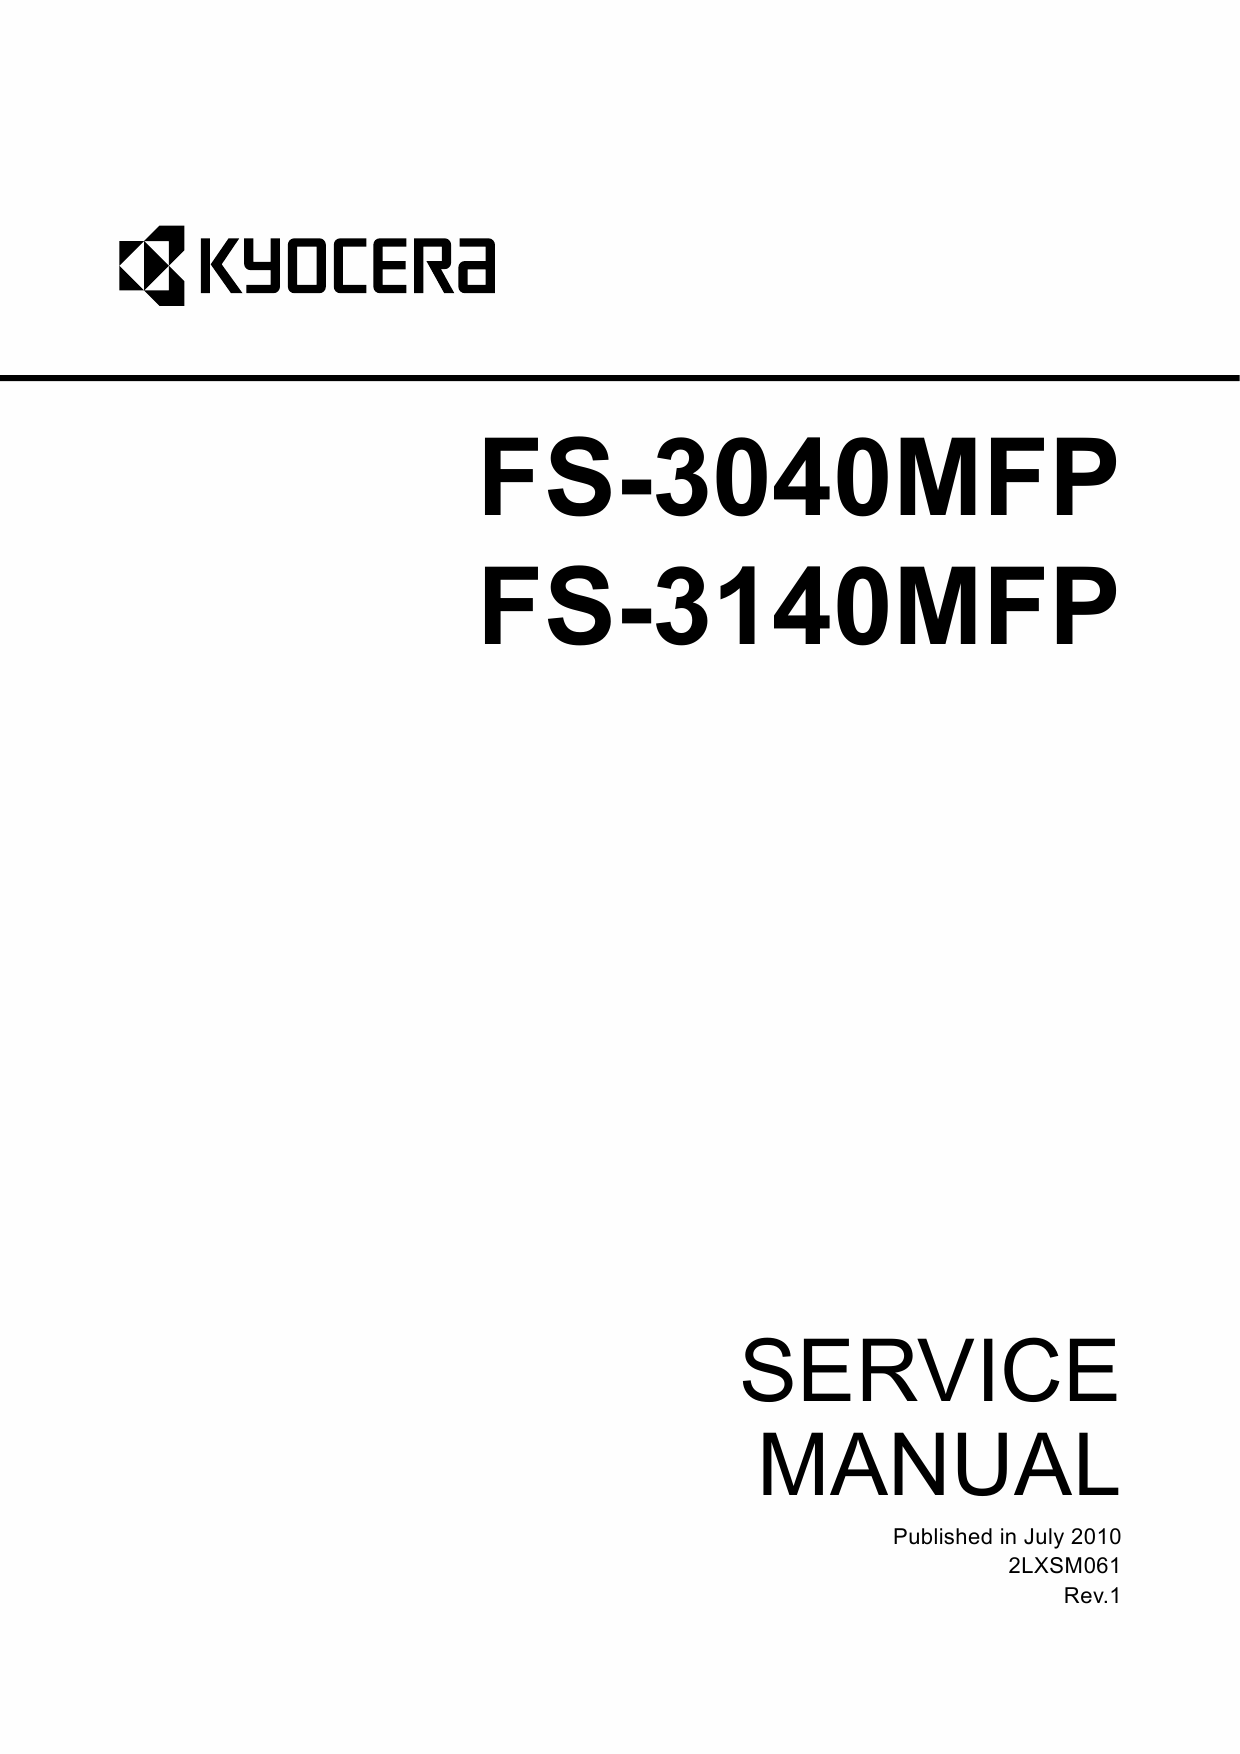 KYOCERA MFP FS-3040MFP 3140MFP Parts and Service Manual-1